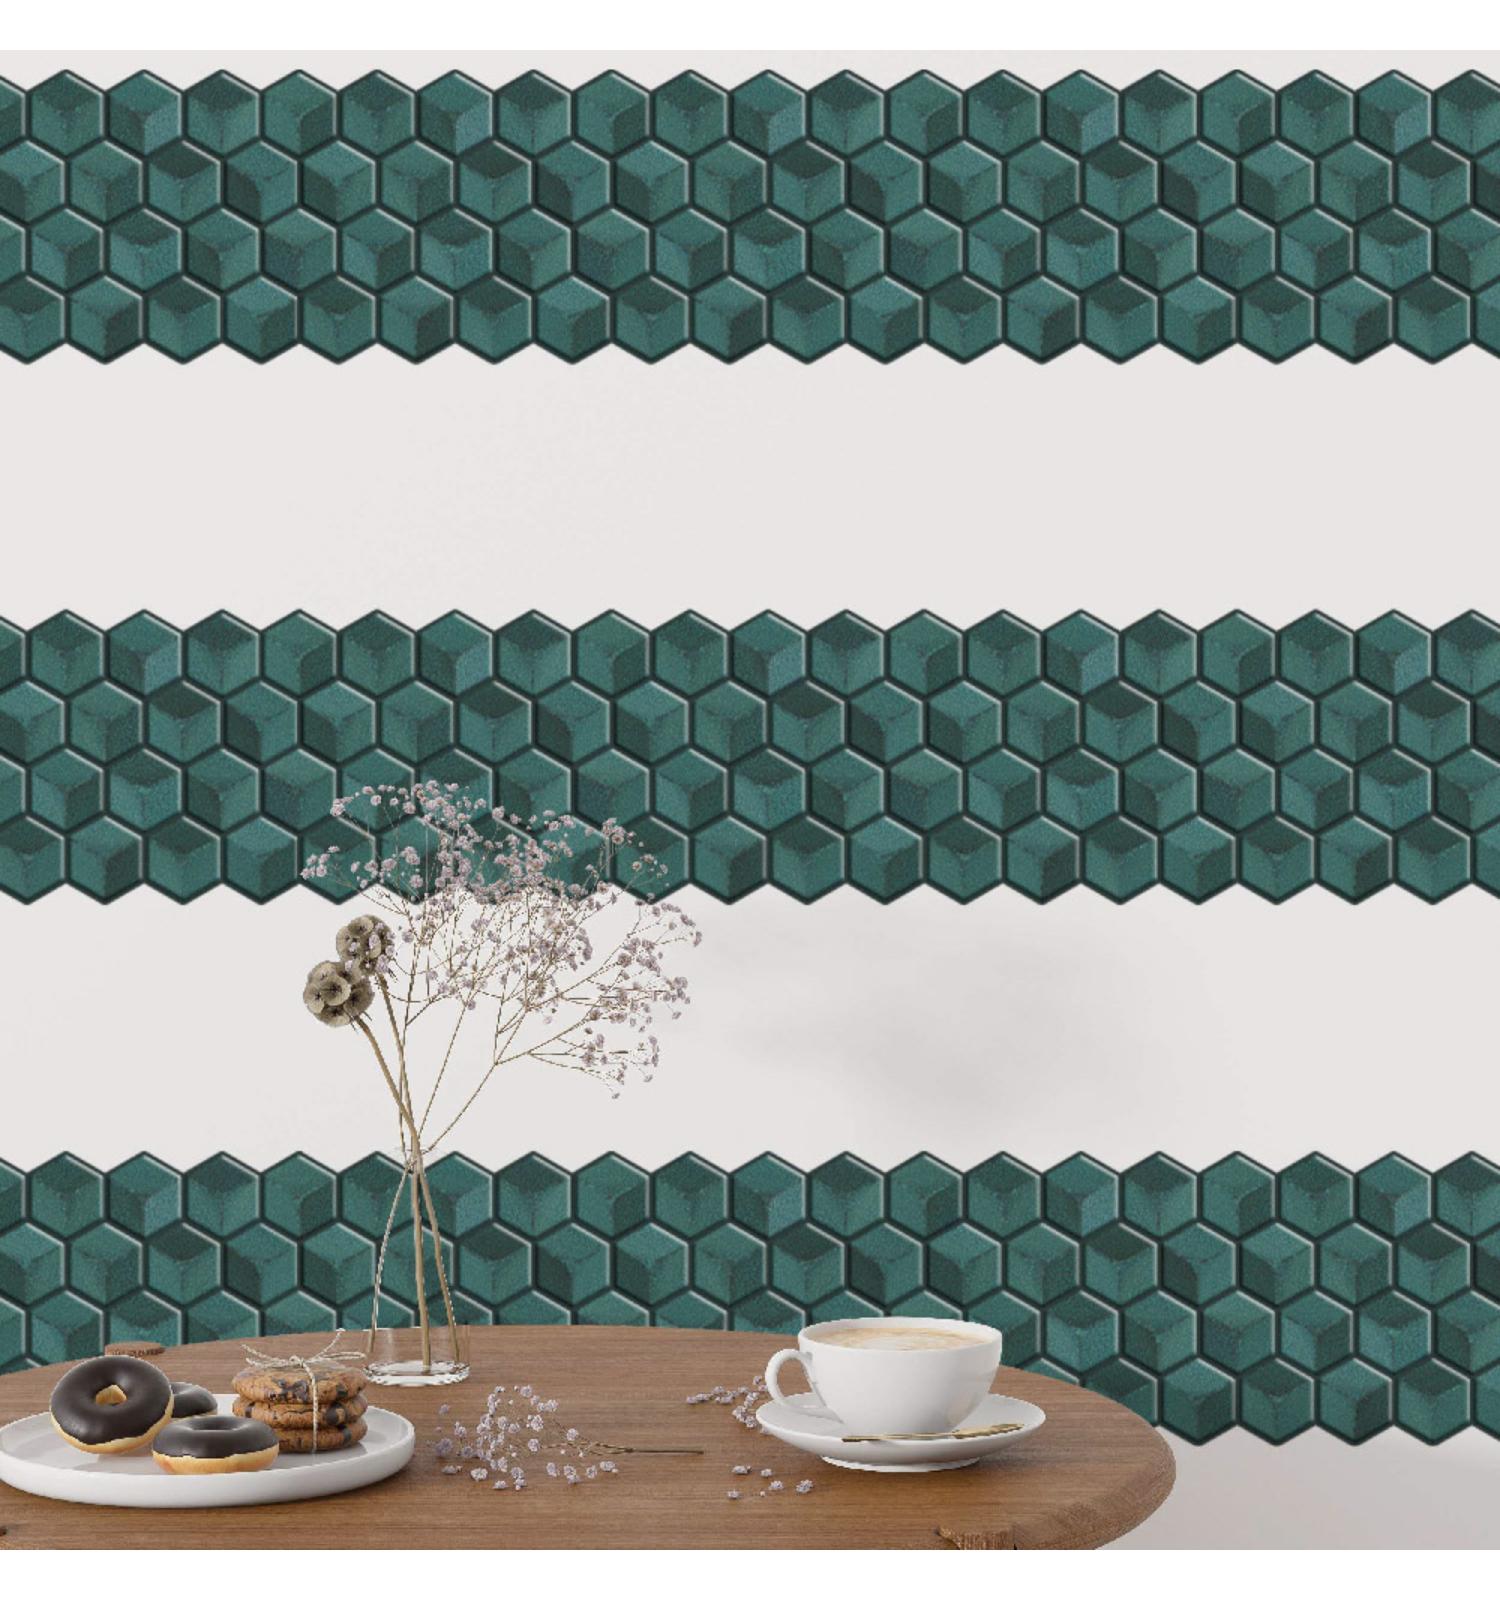 Supreme Blue peel and Stick Wall Tile, Hexagon Kitchen Backsplash Tiles | self Adhesive Tiles for Home